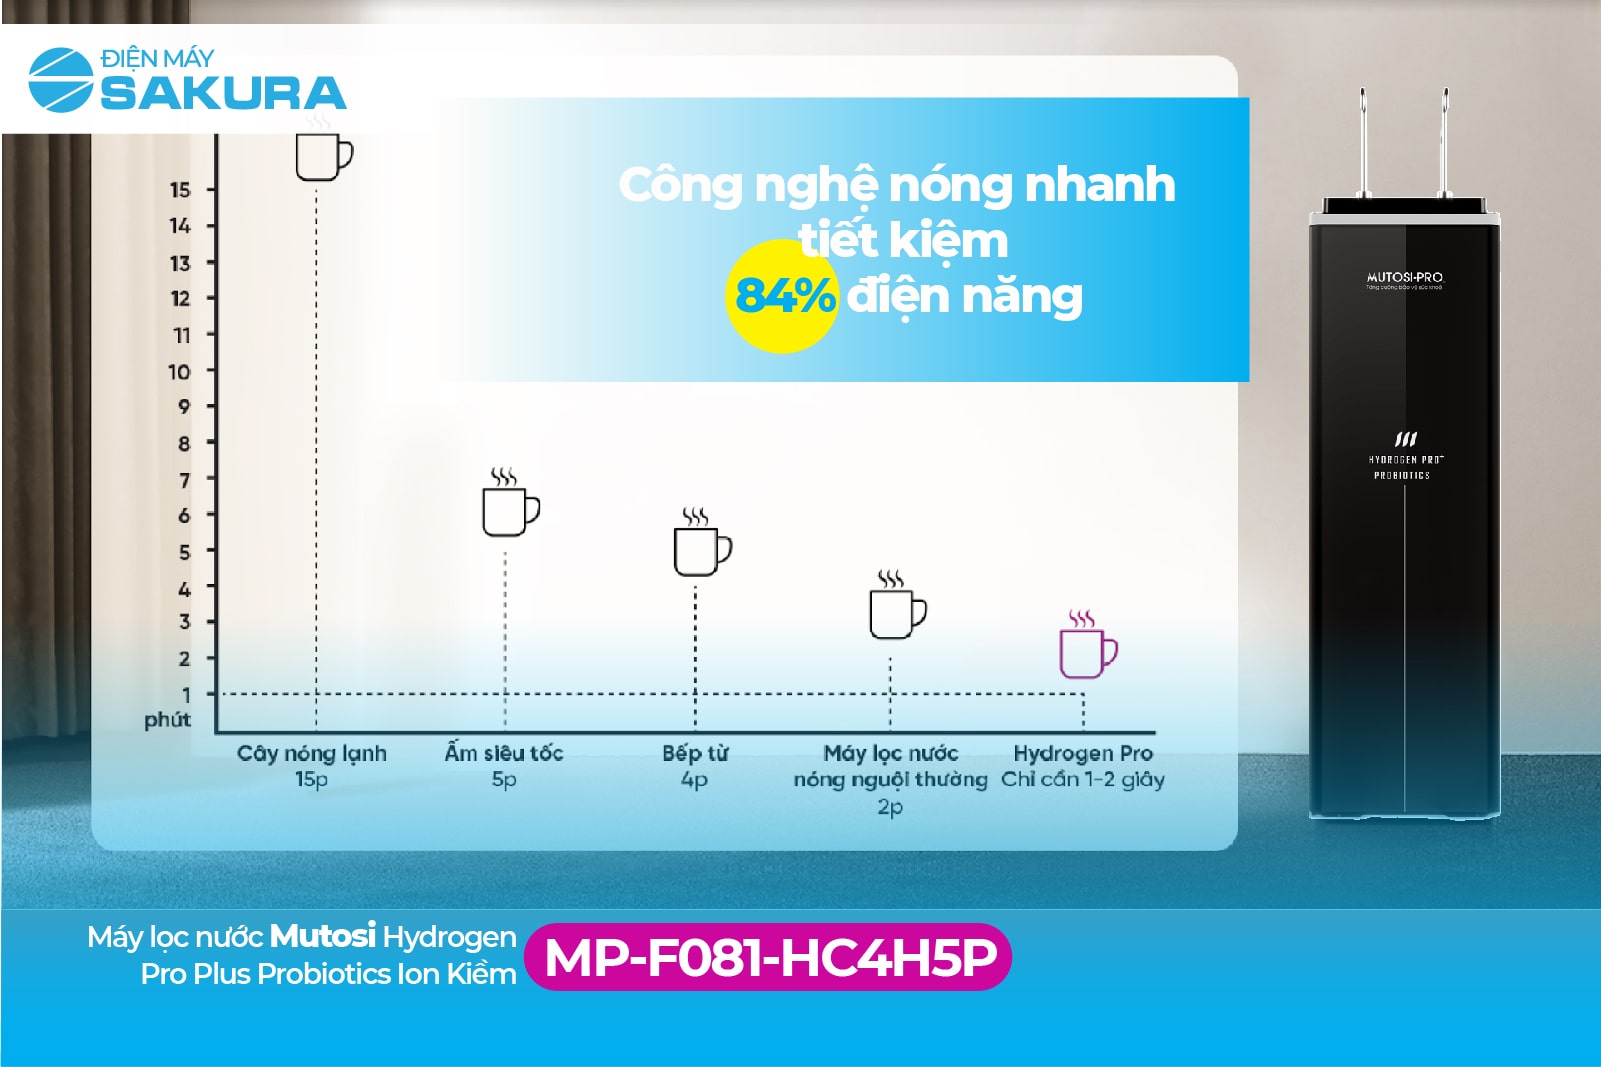 Máy lọc nước Mutosi Hydrogen Probiotics MP-F081-HC4H5P tiết kiệm điện năng 